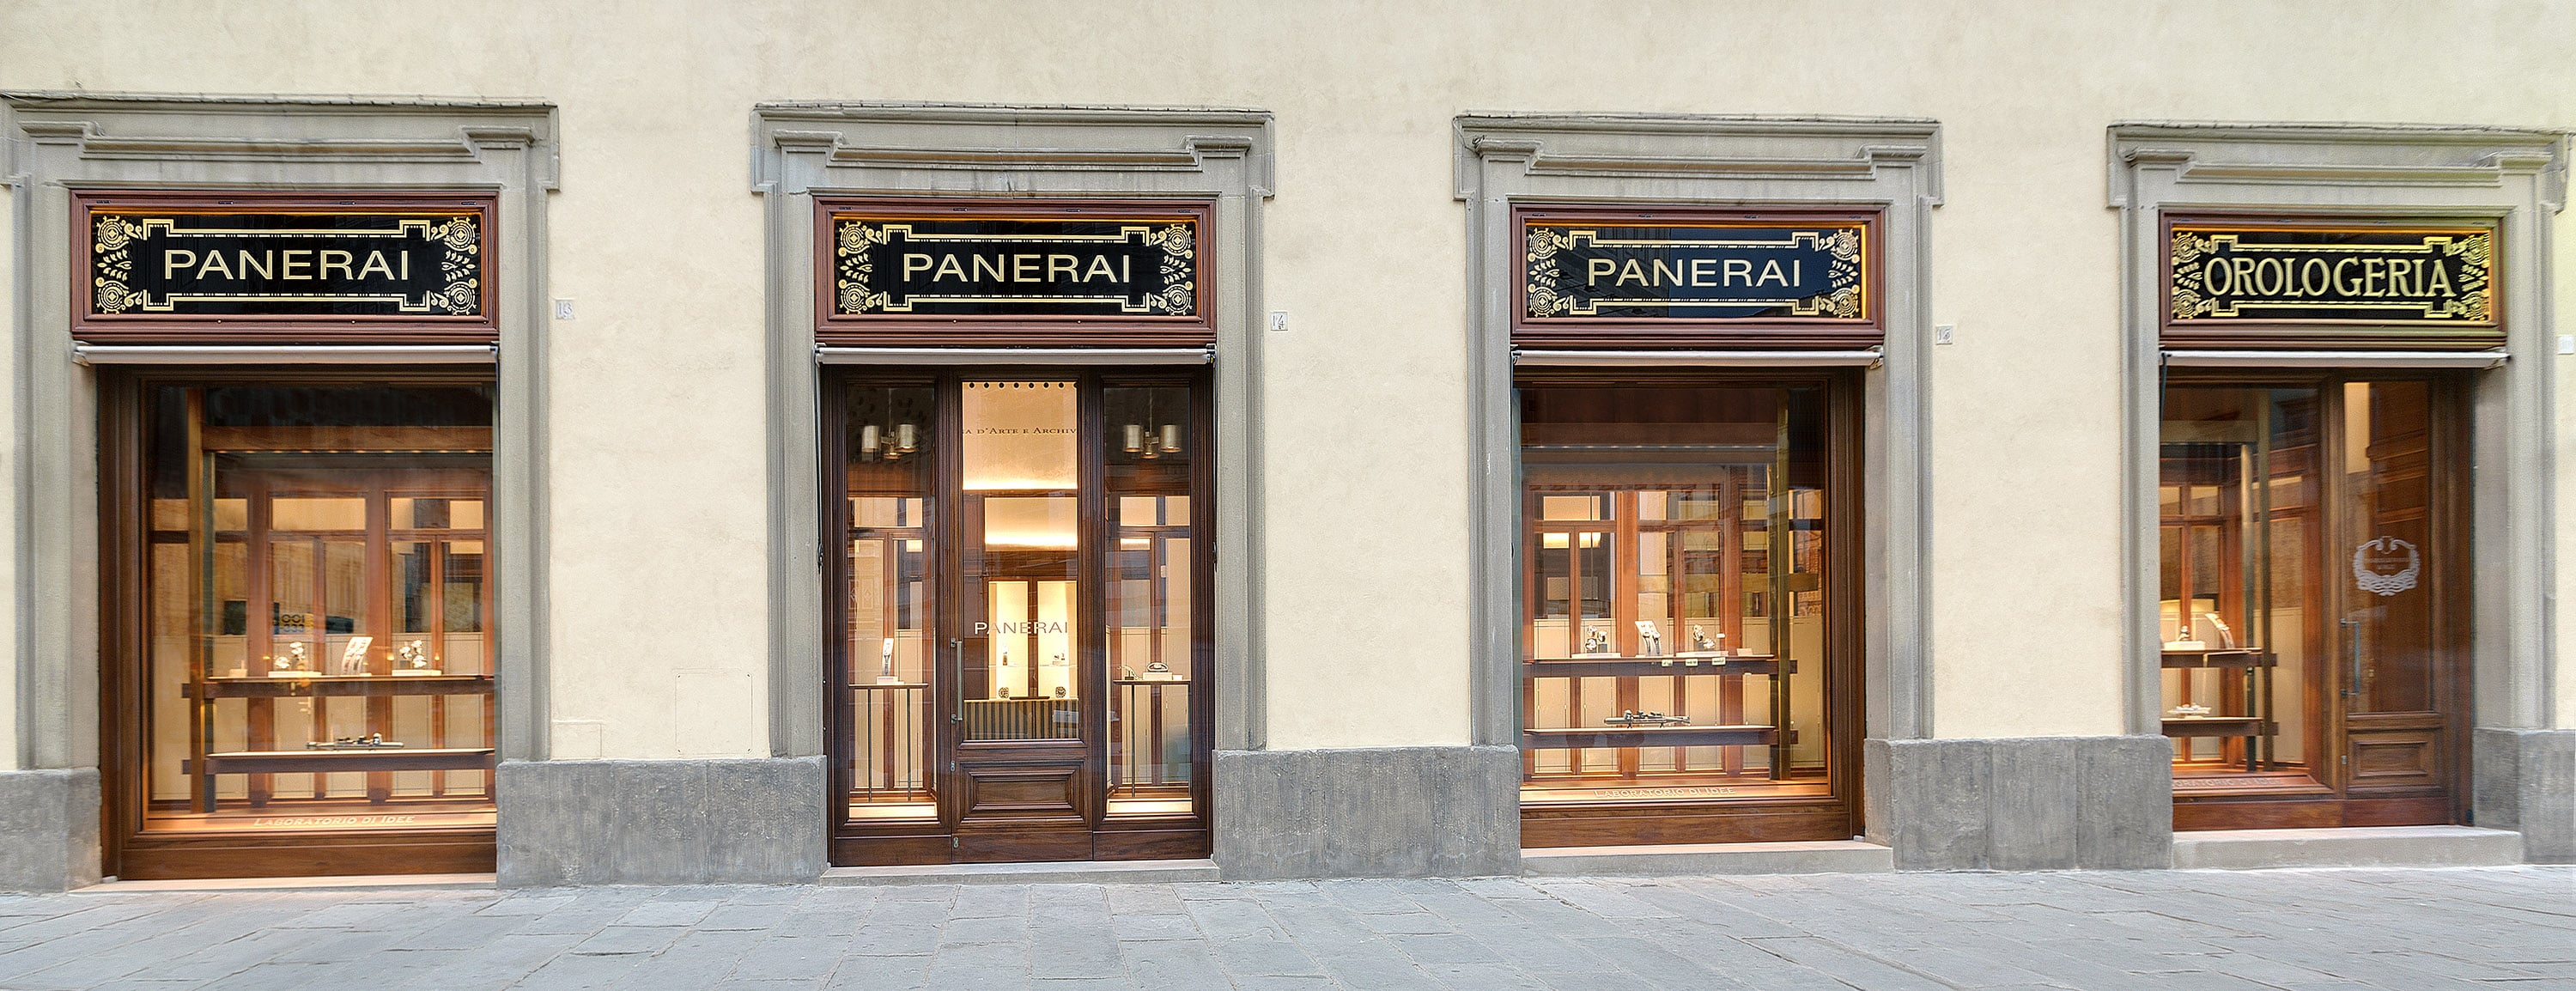 Panerai_Boutique_Florenz